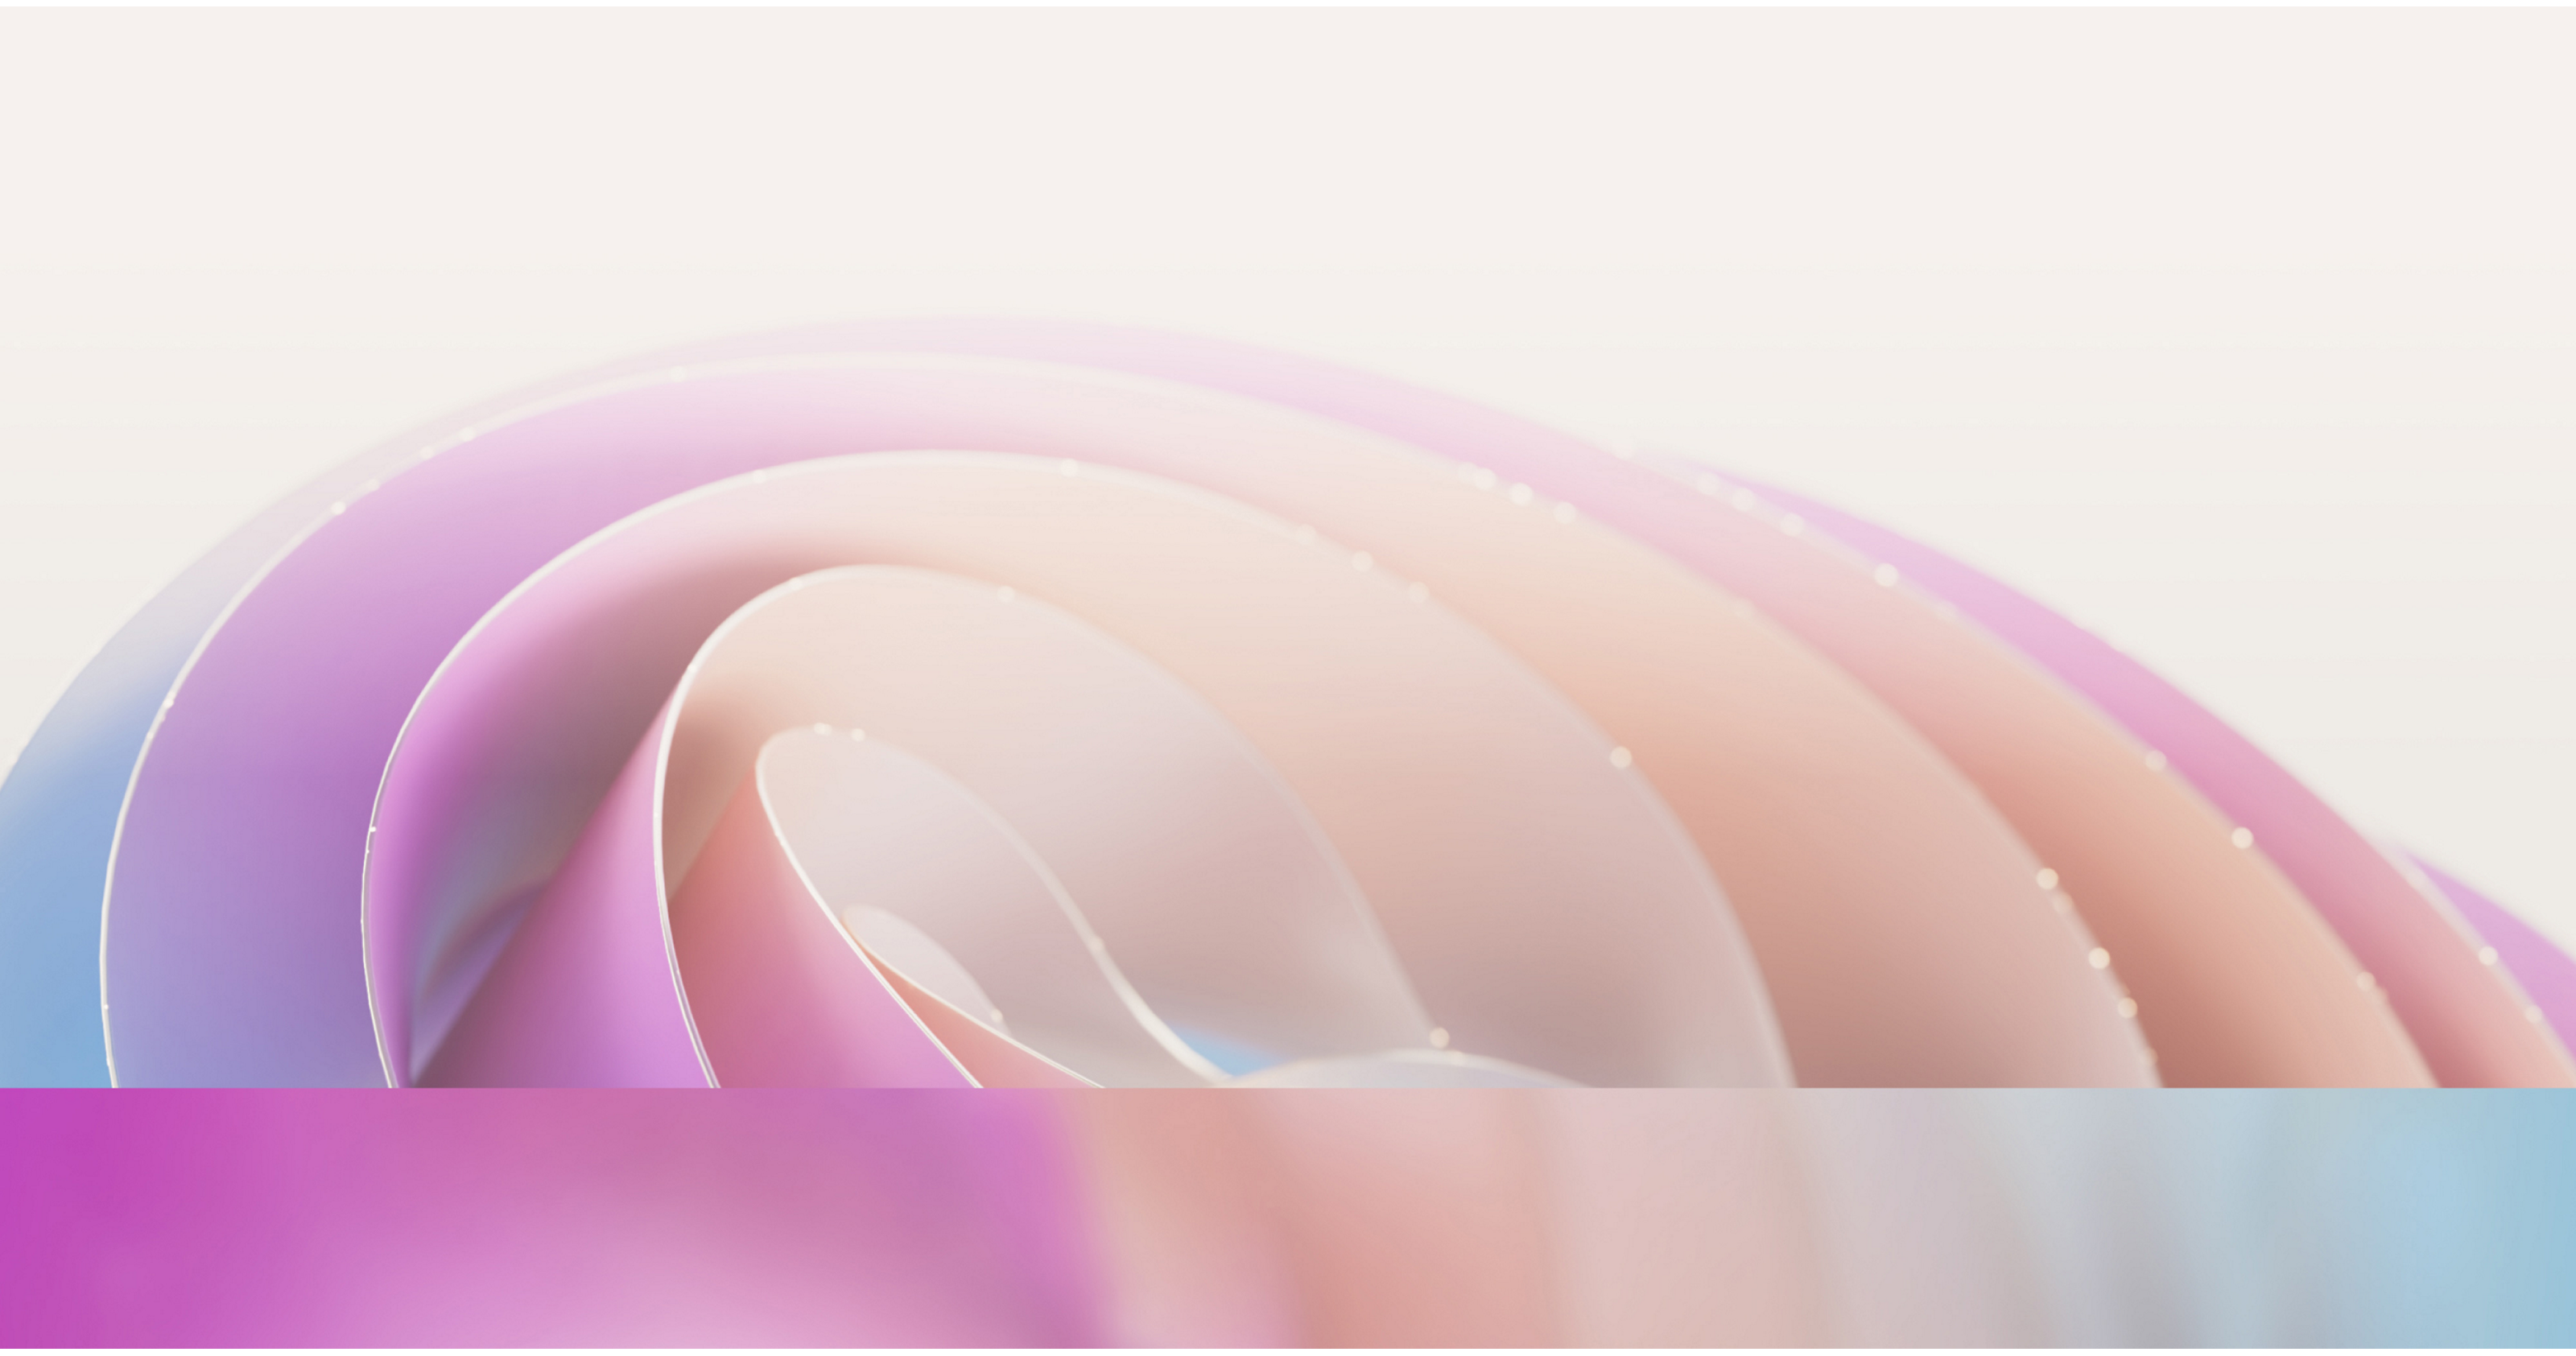 以柔和粉紅色與紫色色調及細微的散射光線效果，呈現出具有平緩流暢曲線的抽象影像。